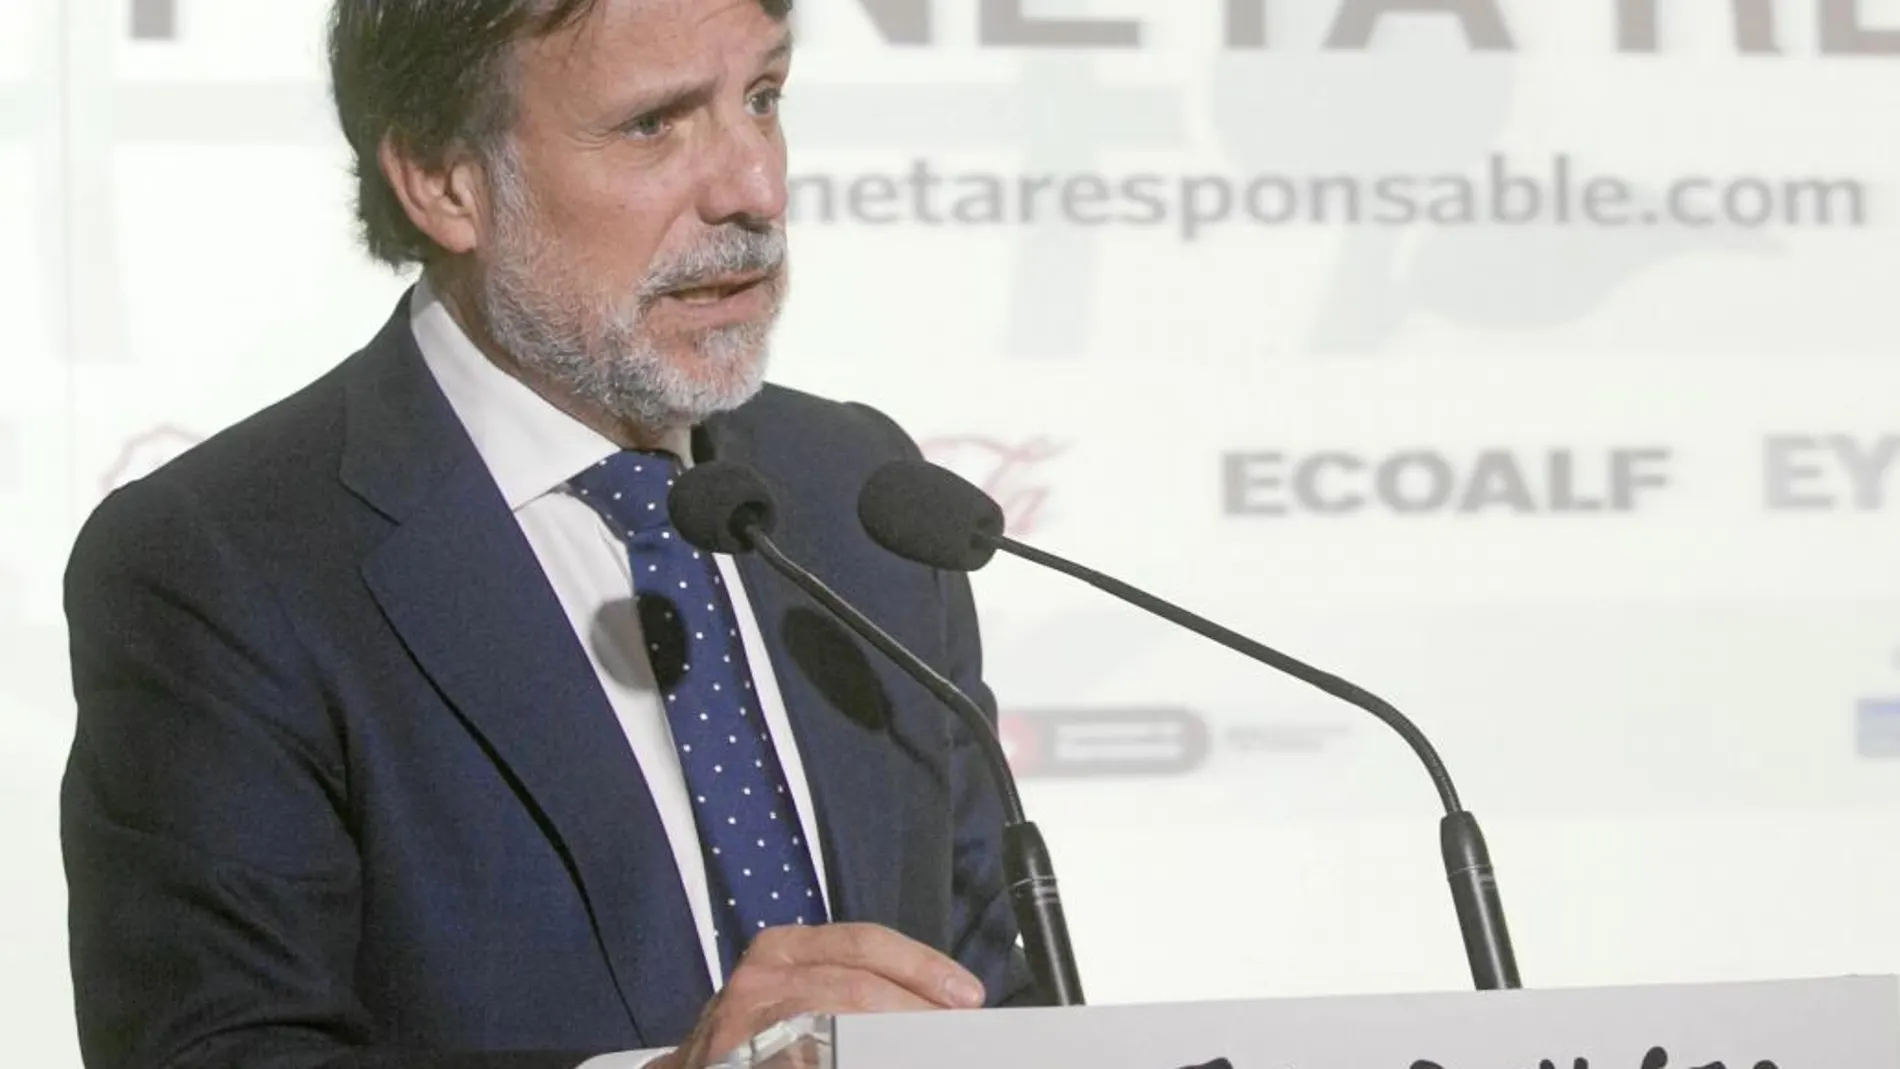 El presidente del Grupo Planeta, José Creuheras, abrió este foro de debate